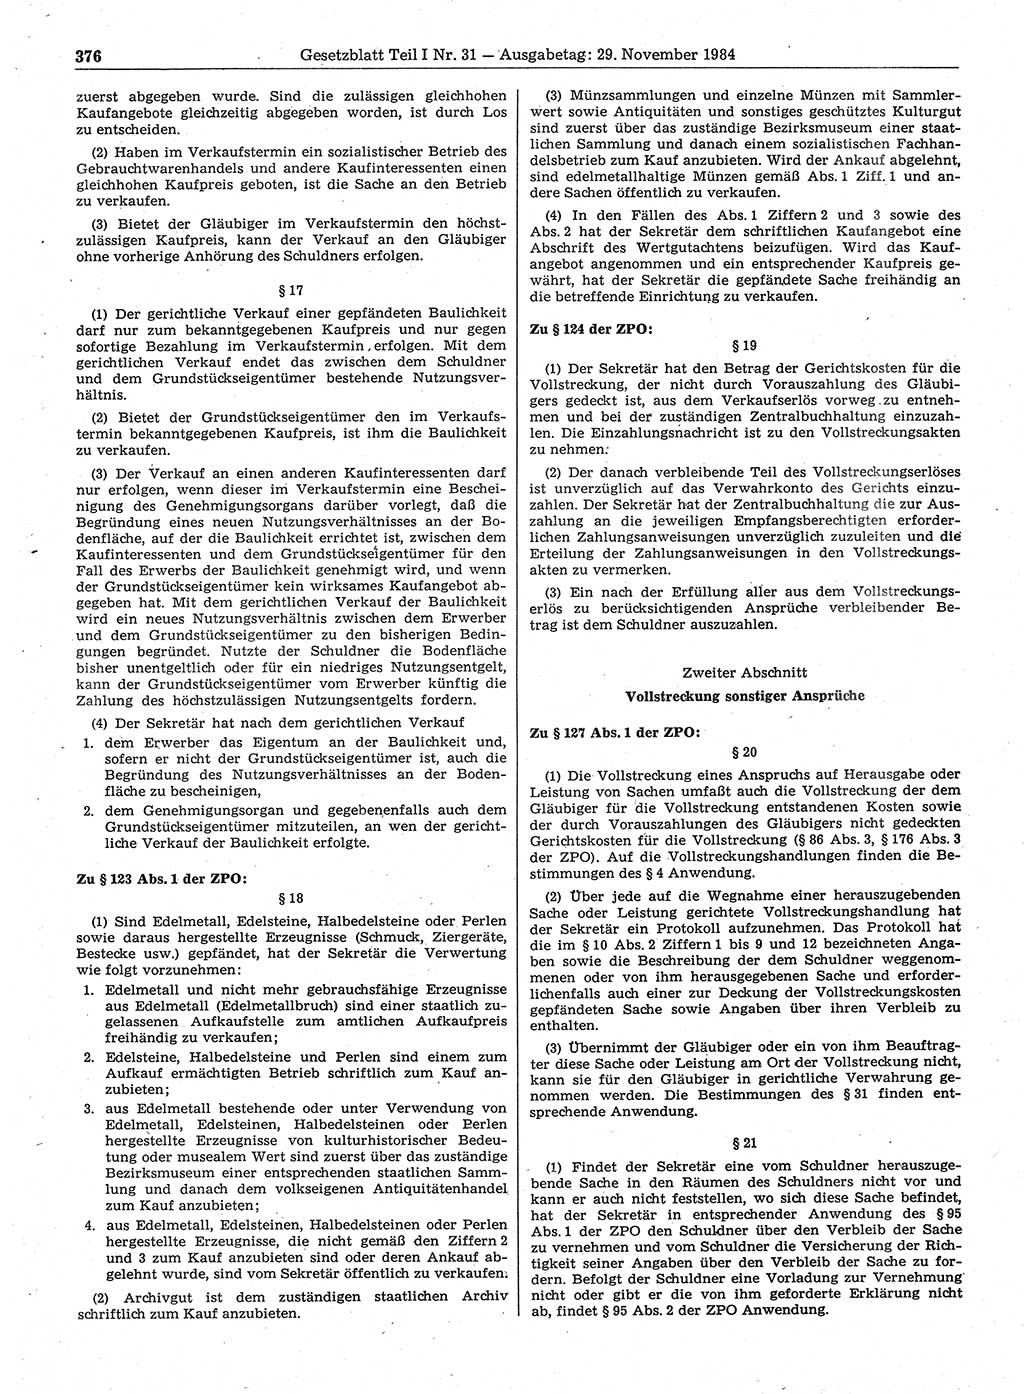 Gesetzblatt (GBl.) der Deutschen Demokratischen Republik (DDR) Teil Ⅰ 1984, Seite 376 (GBl. DDR Ⅰ 1984, S. 376)